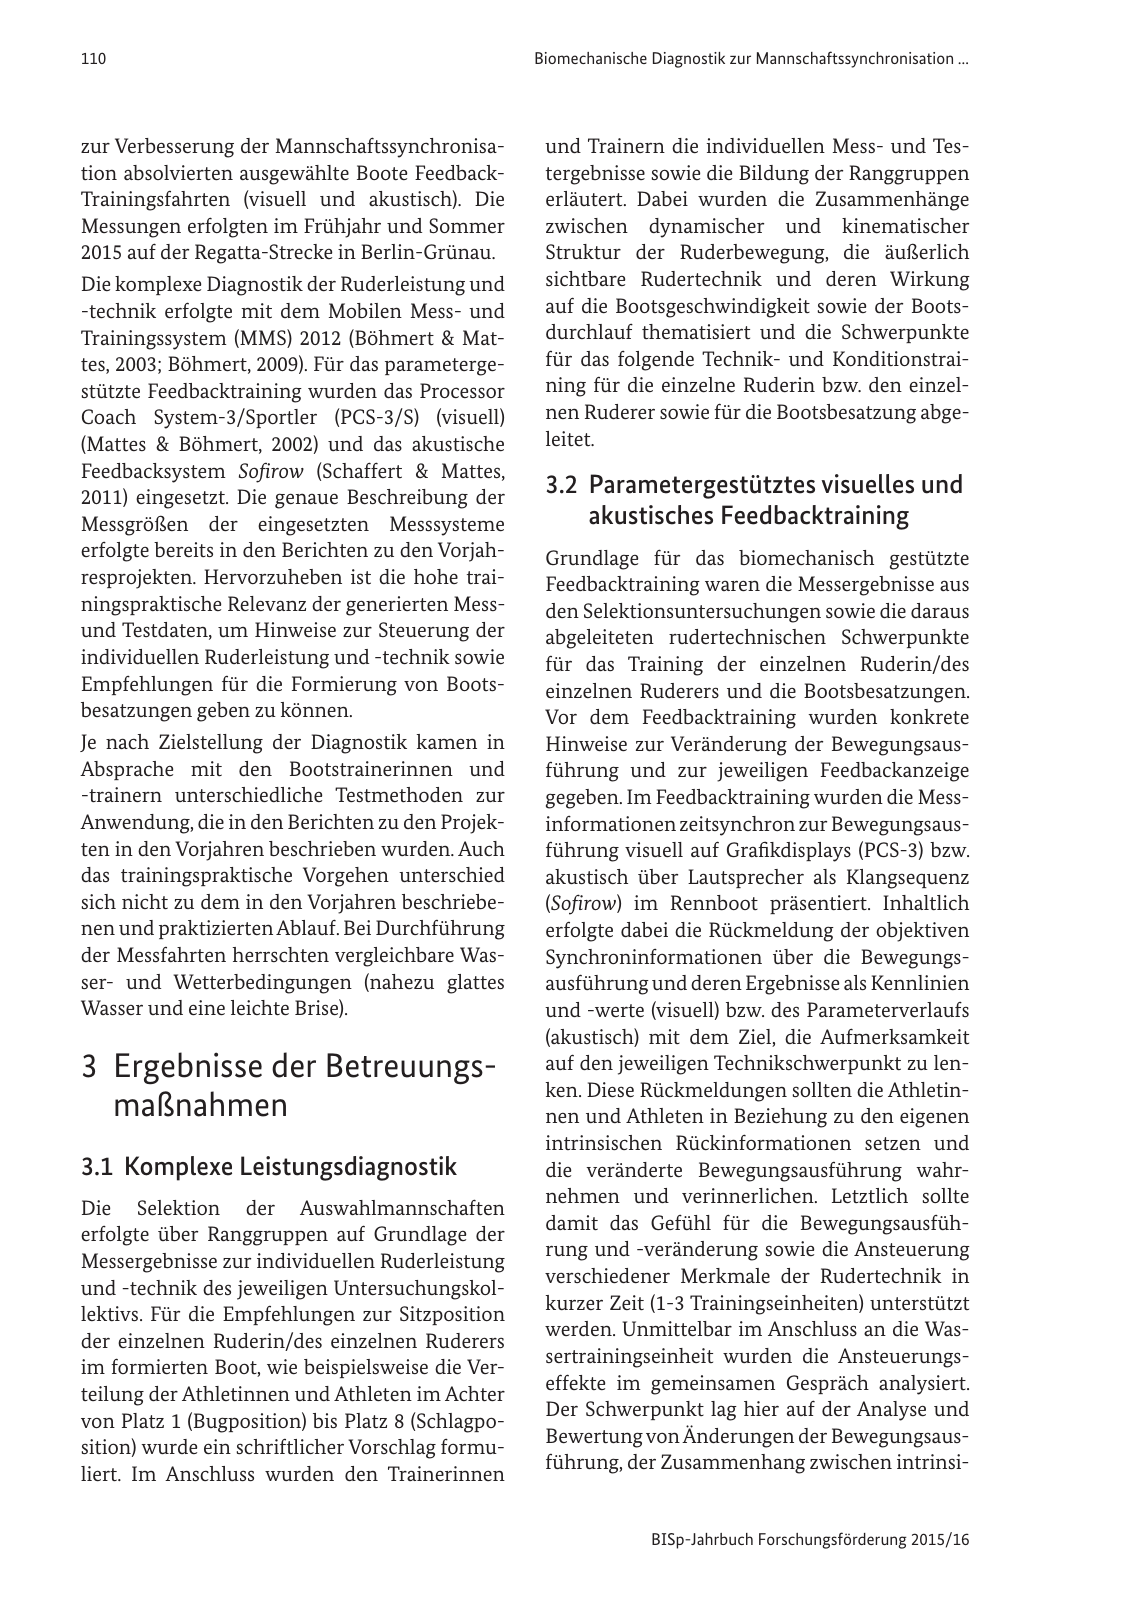 Vorschau BISp-Jahrbuch Forschungsförderung 2015/16 Seite 112